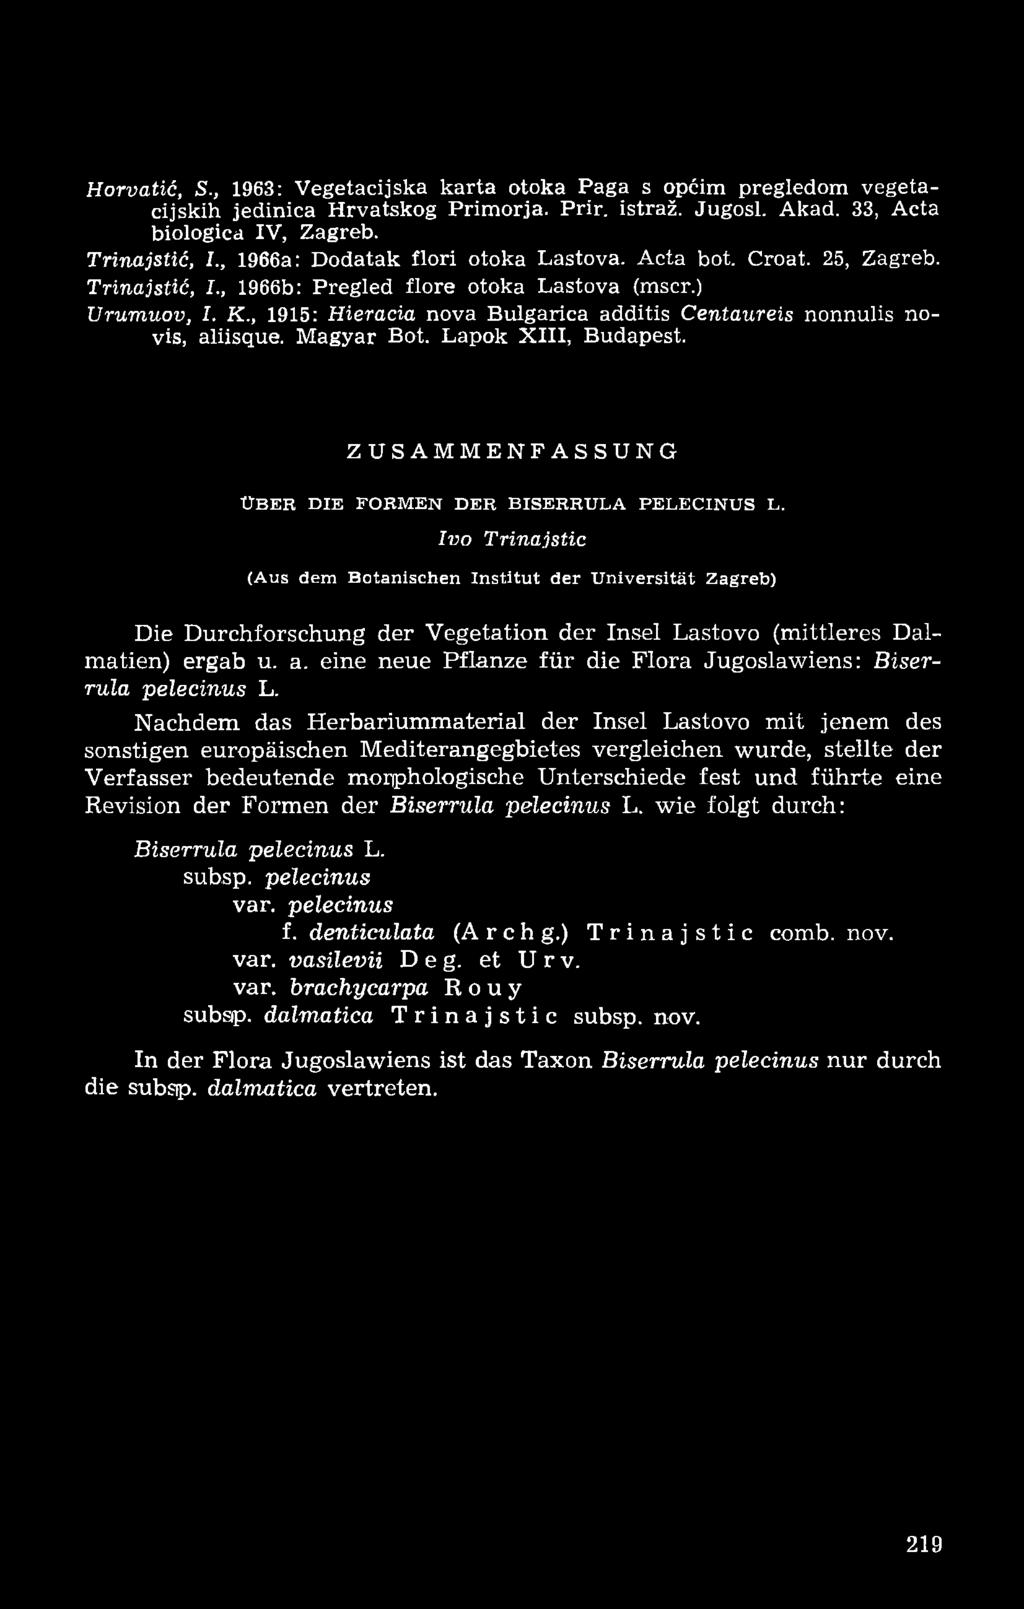 , 1915: Hieracia nova Bulgarica additis Centaureis nonnulis novis, aliisque. Magyar Bot. Lapok XIII, Budapest. ZUSAMMENFASSUNG ÜBER DIE FORMEN DER BISERRULA PELECINUS L.